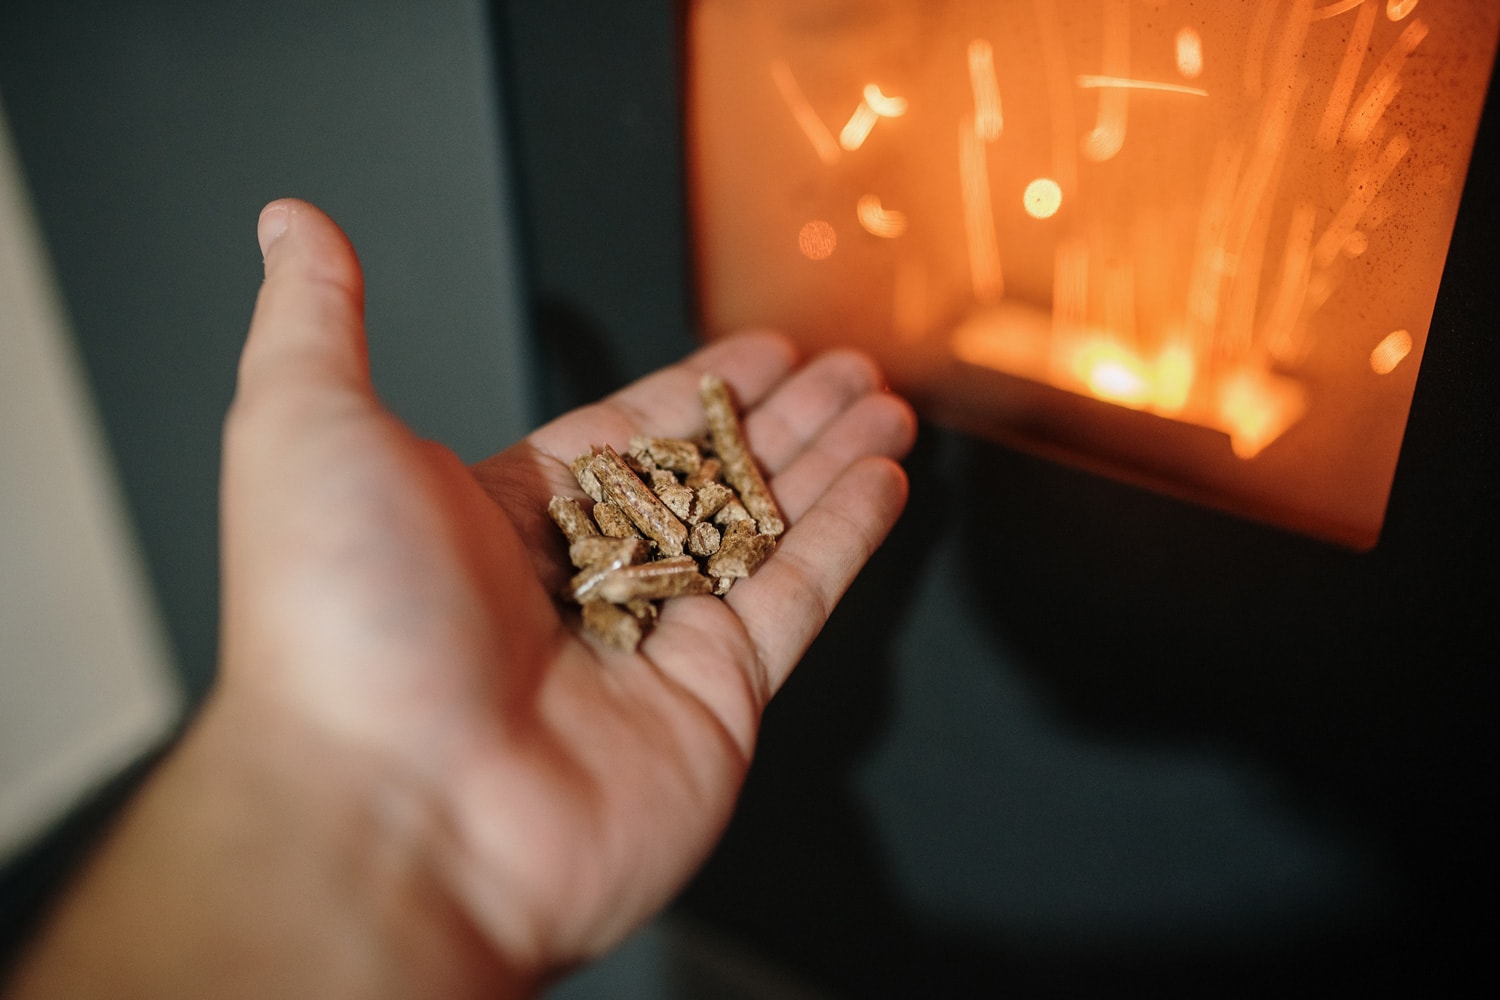 Pellet Biomass heating - Human hand holding biomass pellets by a fireplace